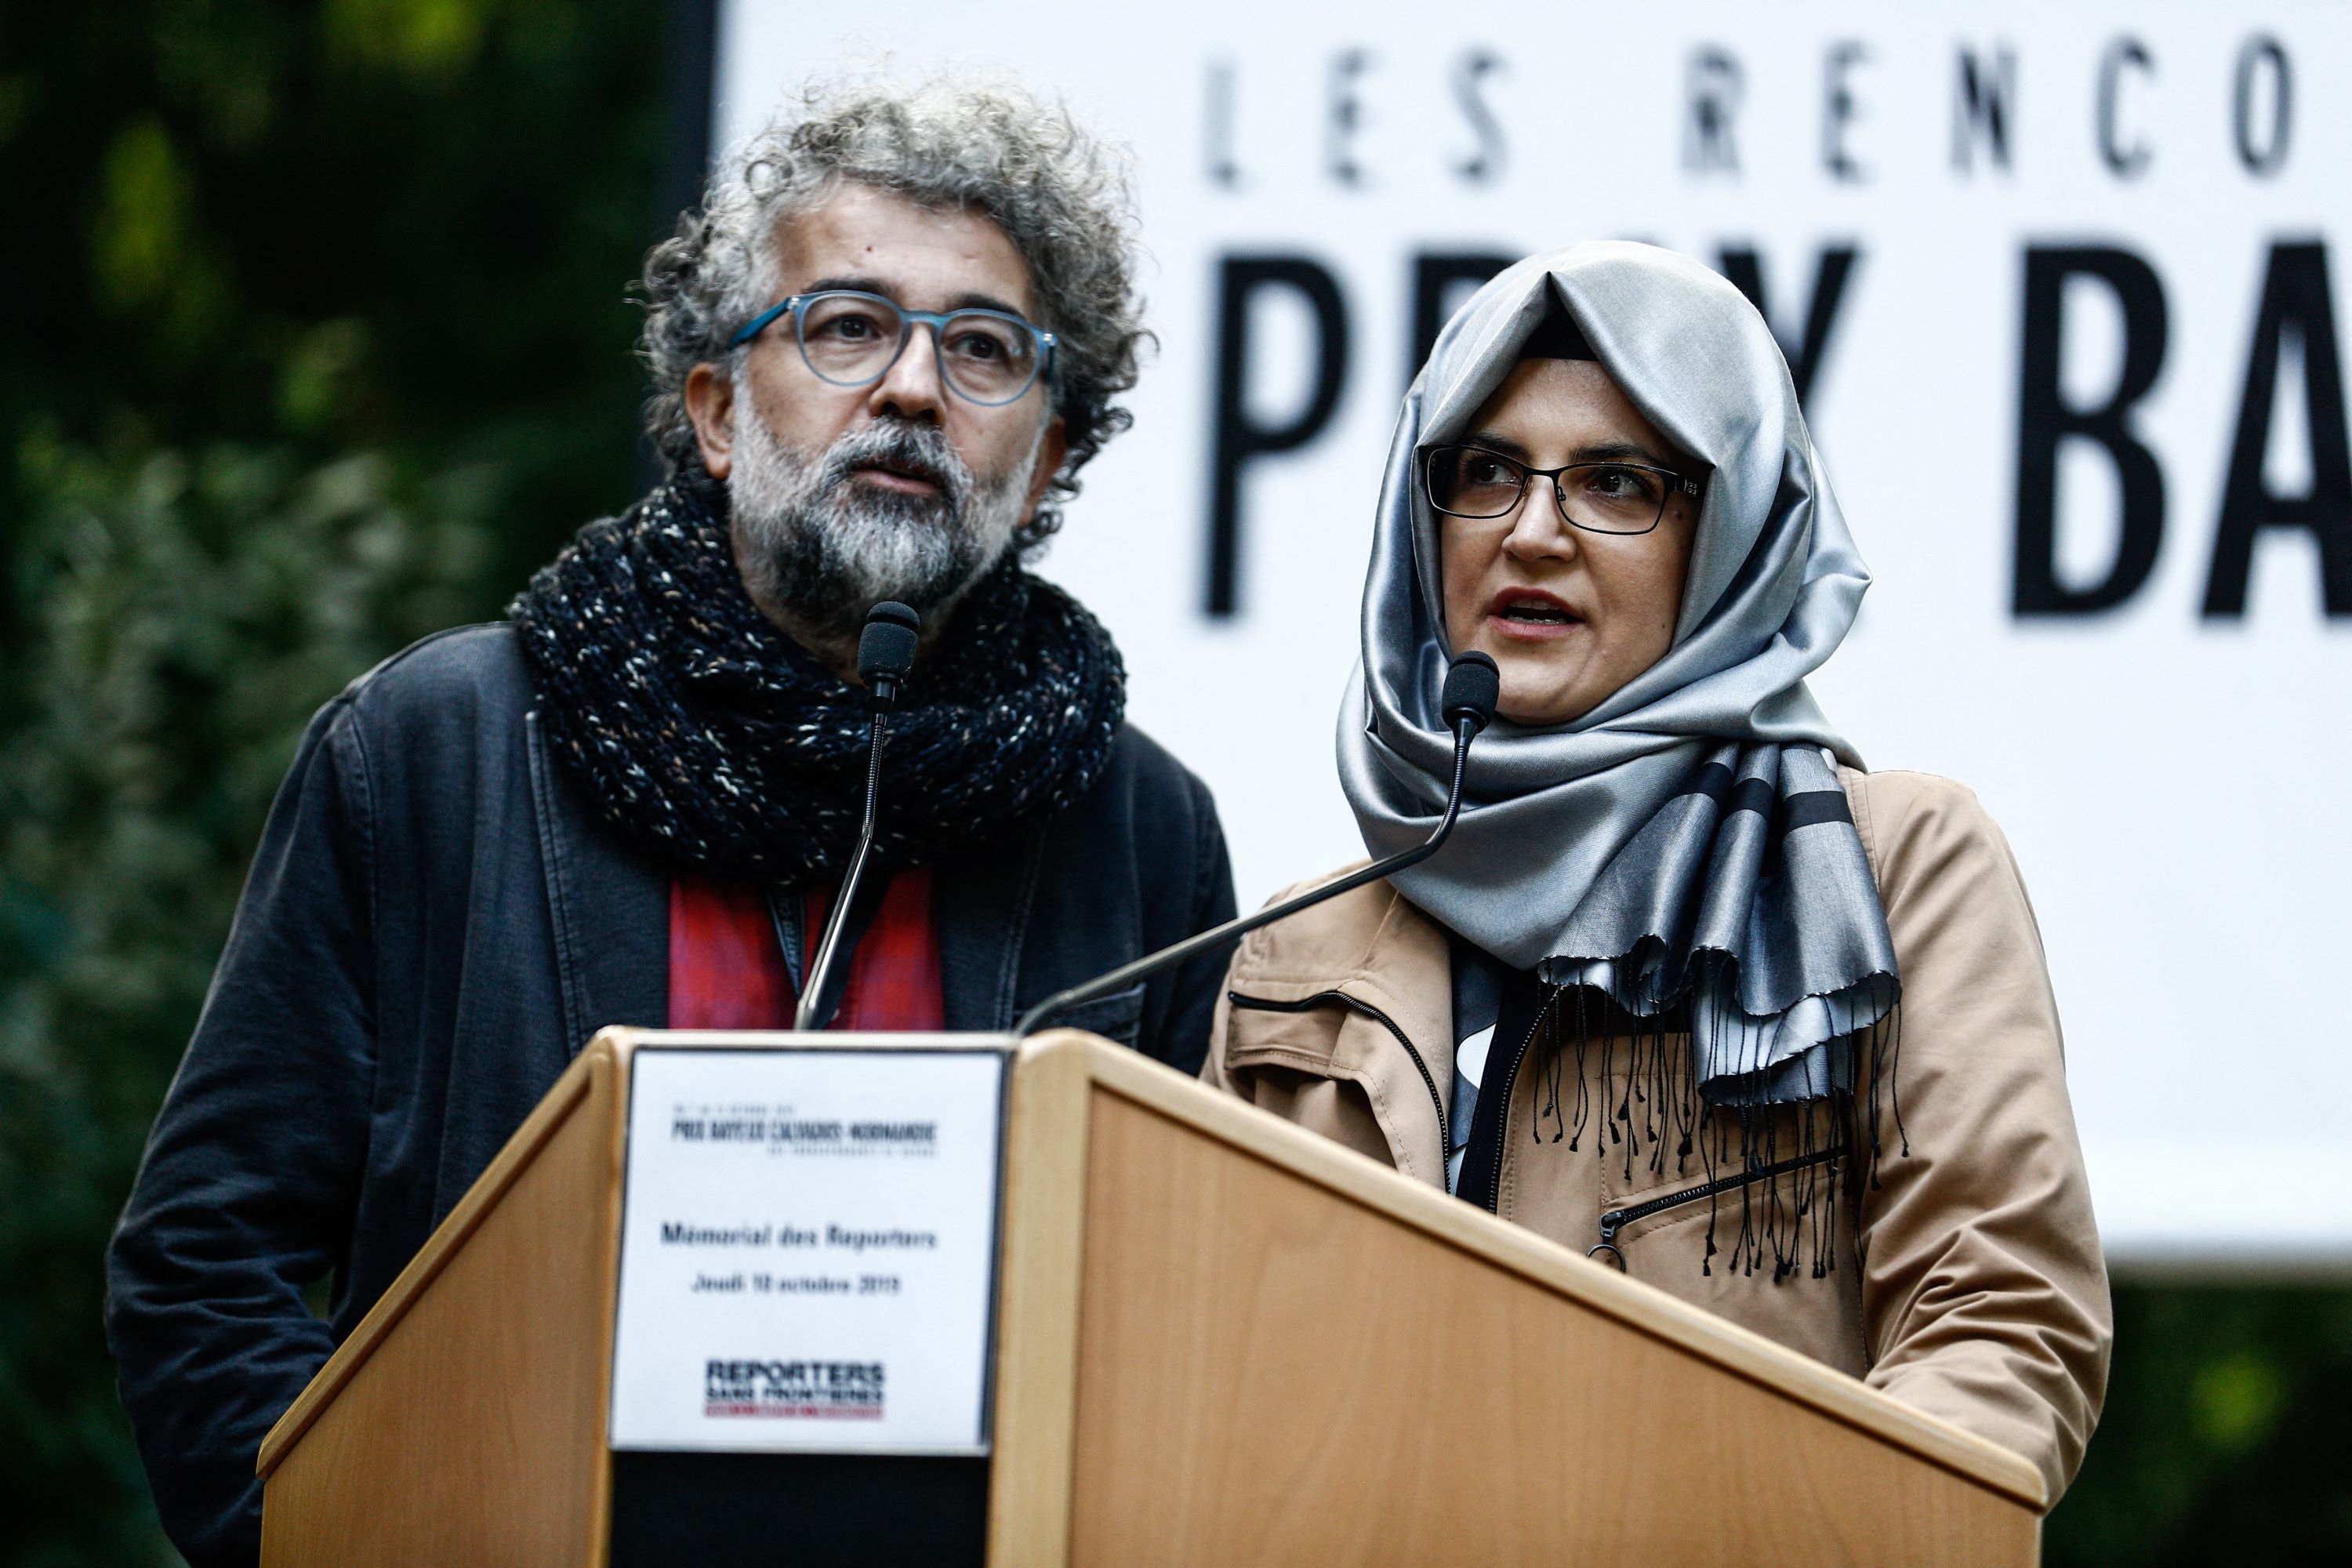 Hatice Cengiz (à droite), la fiancée du journaliste saoudien assassiné Jamal Khashoggi, s’exprime à côté du représentant turc de RSF, Erol Önderoğlu, au Mémorial des reporters de Bayeux, le 10 octobre 2019 (AFP)